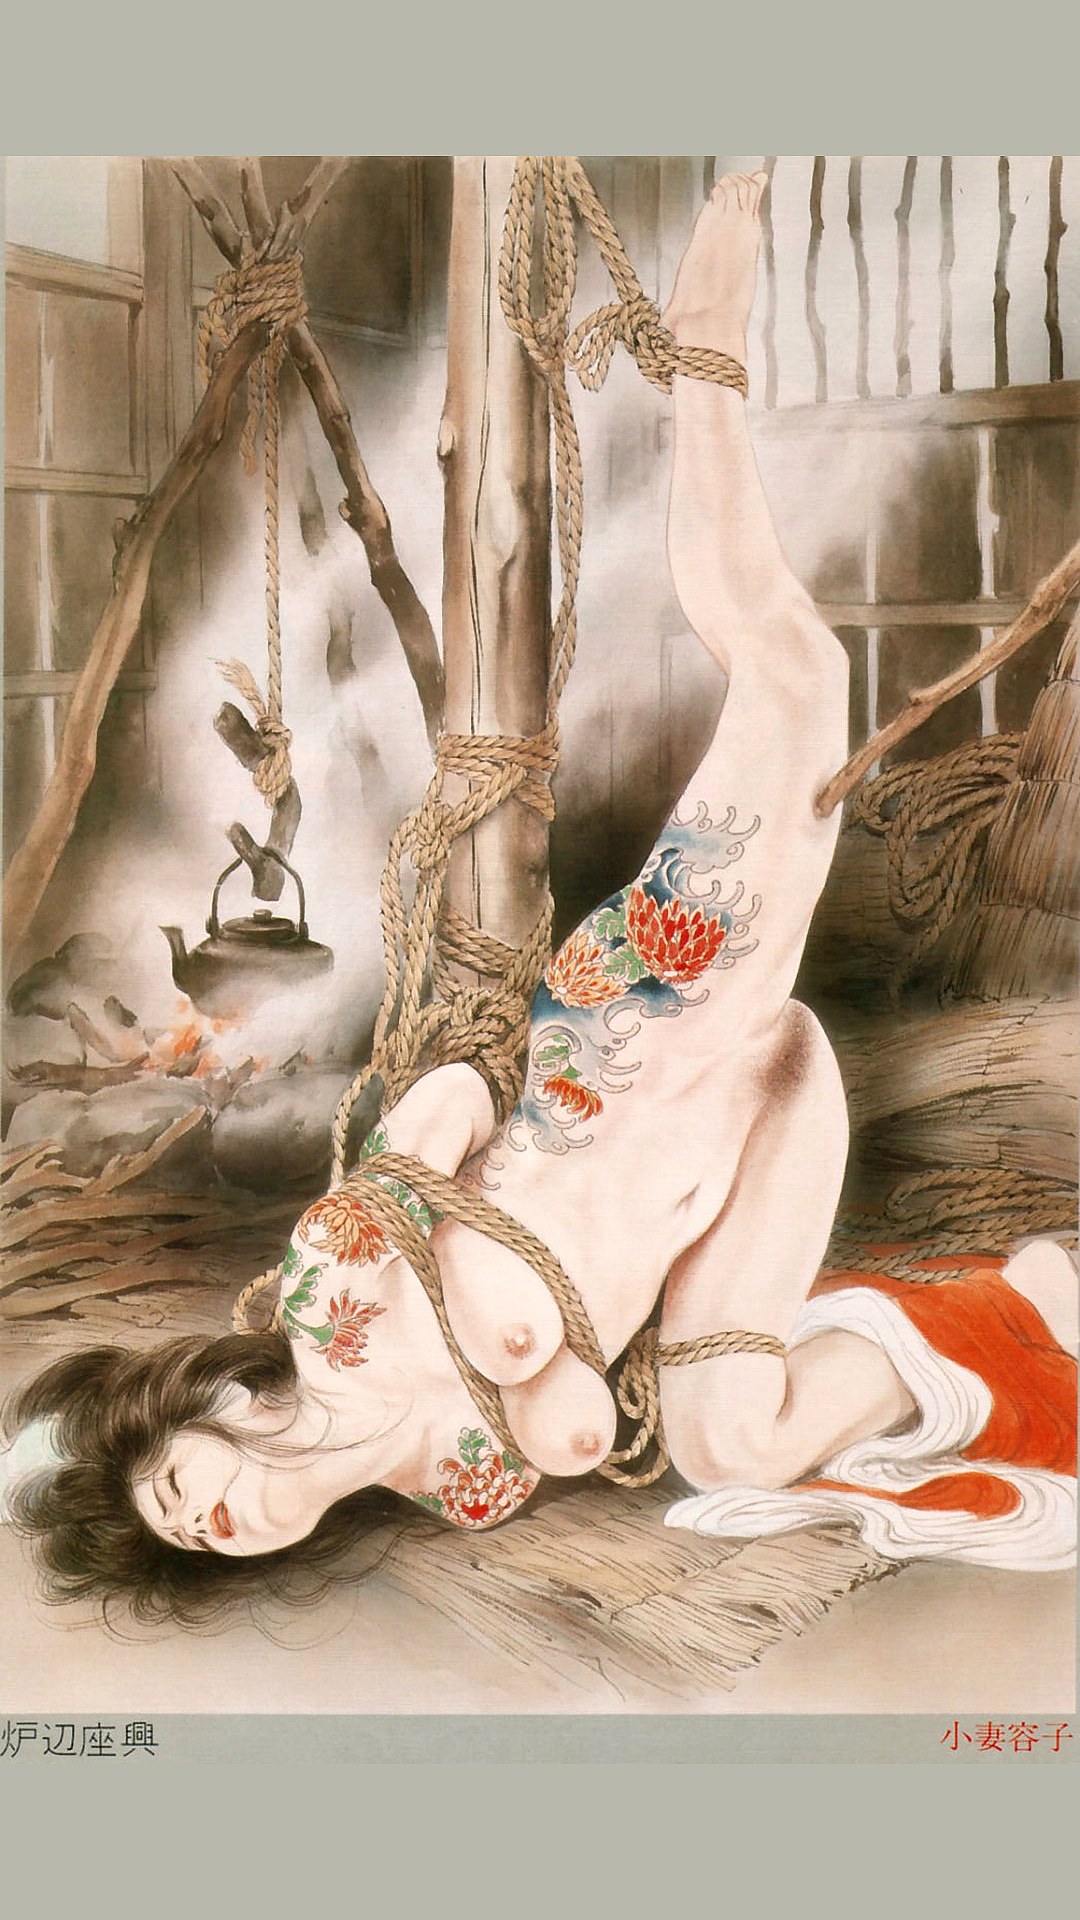 рисунки японская эротика фото 115